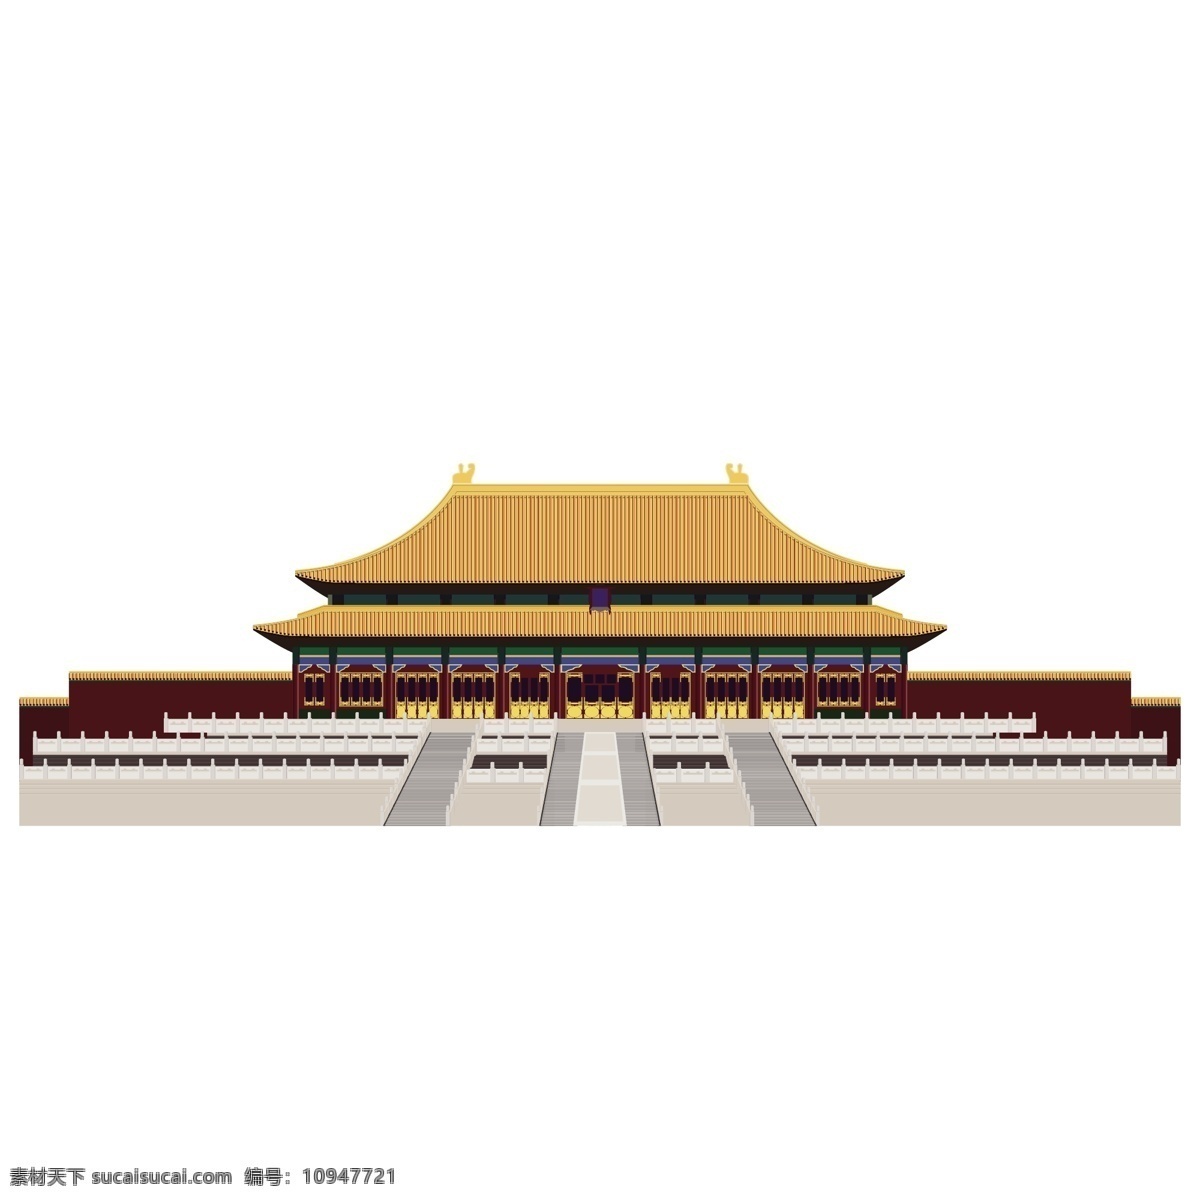 皇宫 故宫 宫殿 帝王 皇帝 中国风 中国风素材 中国建筑 宫廷风素材 环境设计 建筑设计